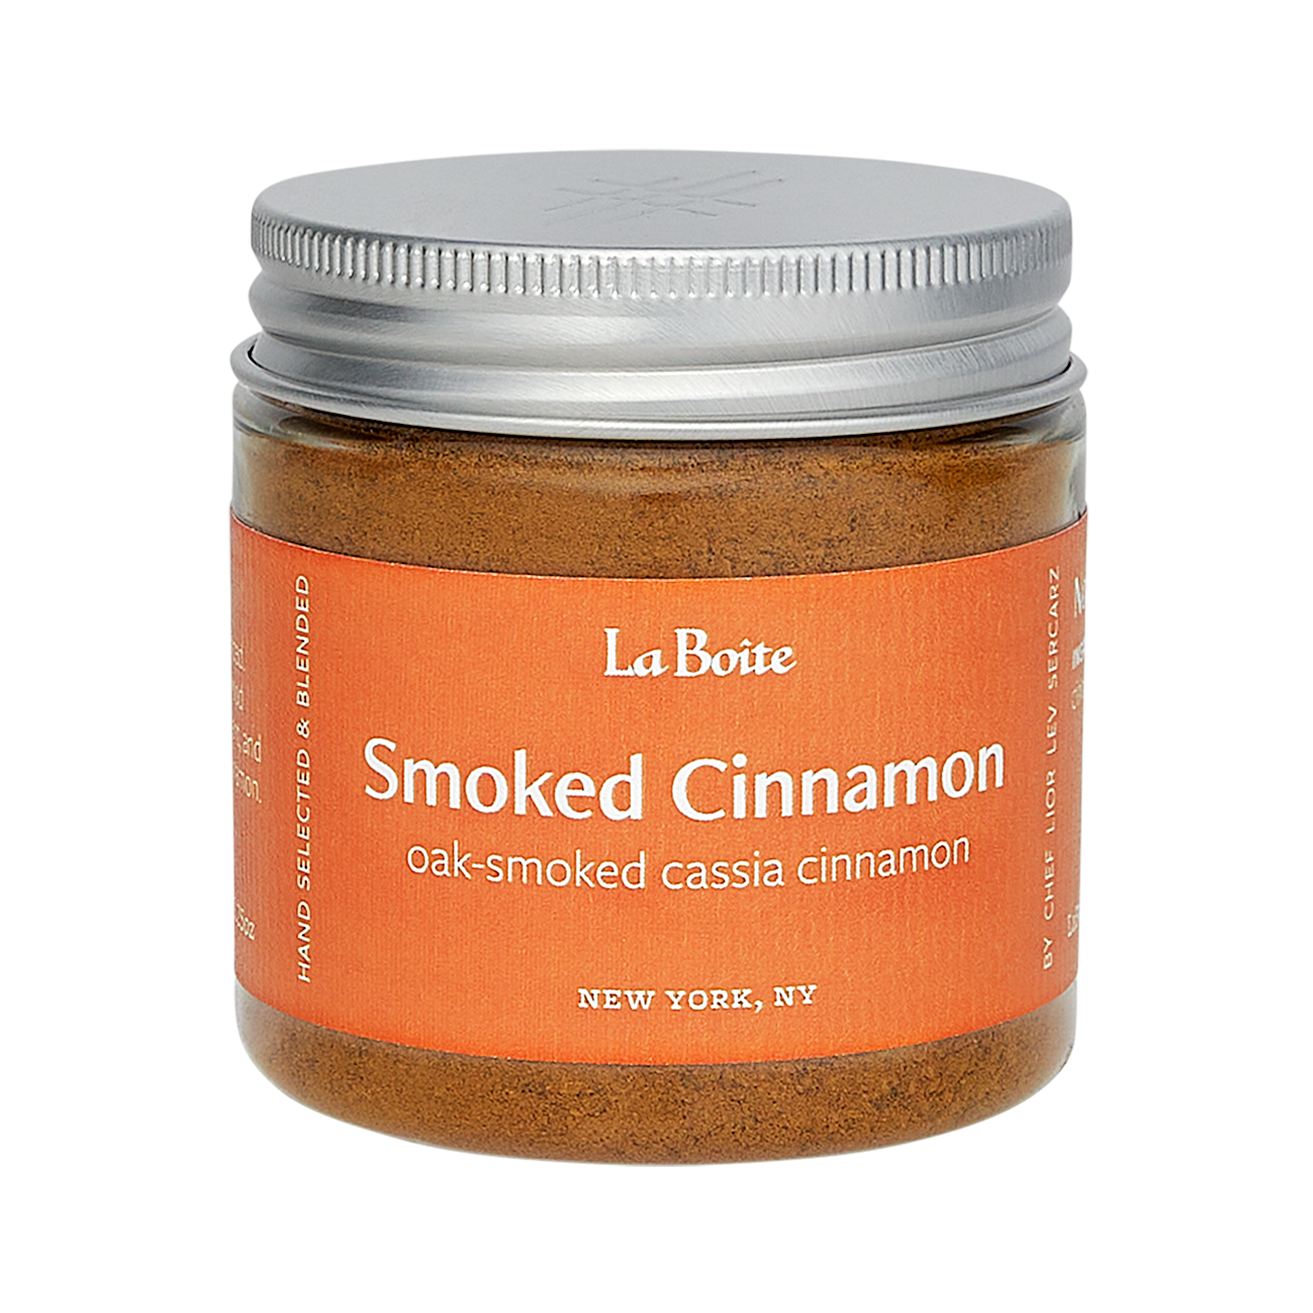 Smoked Cinnamon